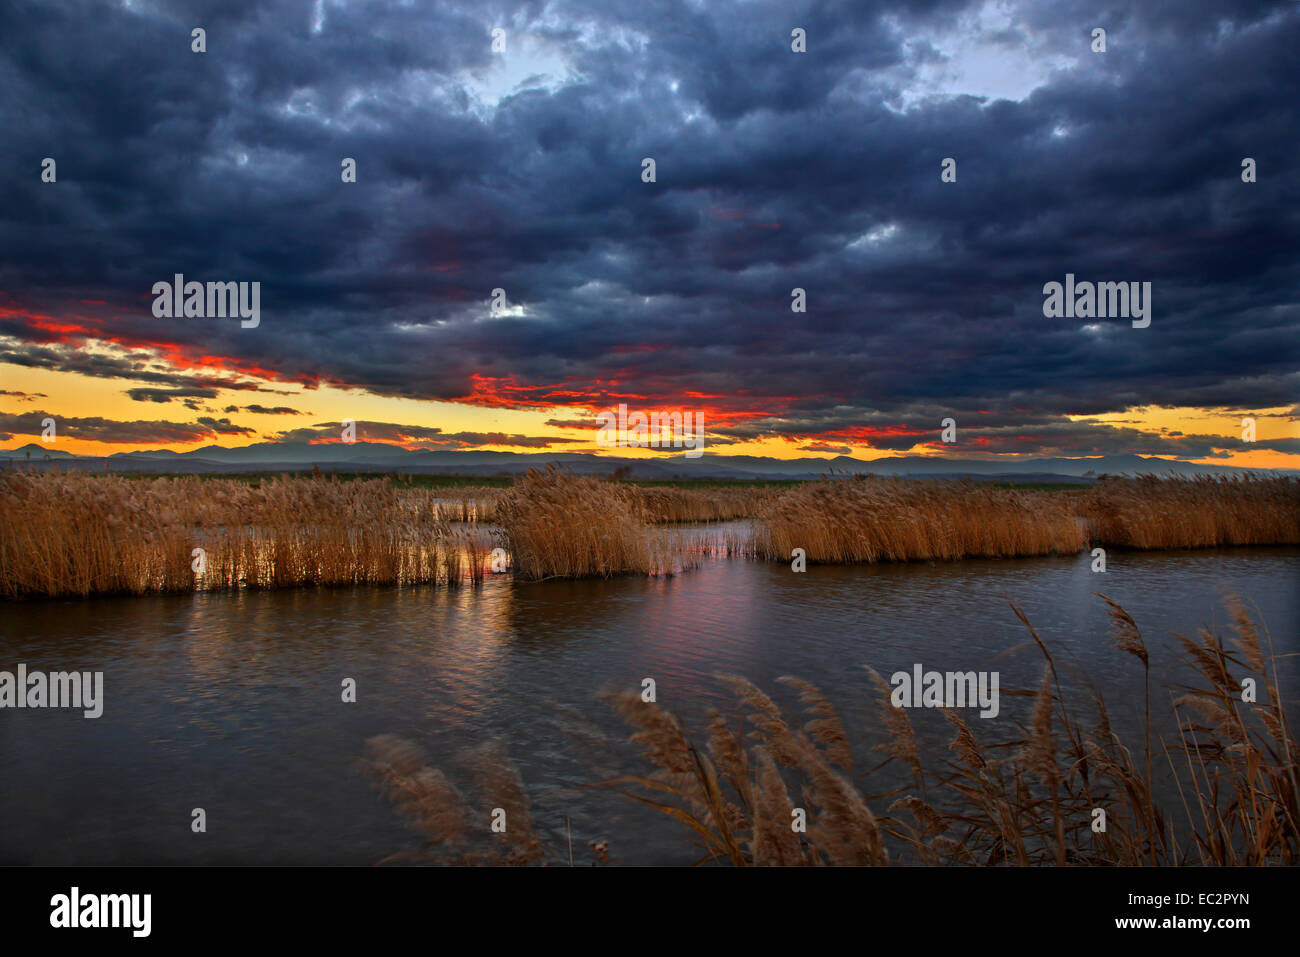 Sunset  at the Delta of Aliakmonas river, Pieria - Imathia, Macedonia, Greece. Stock Photo